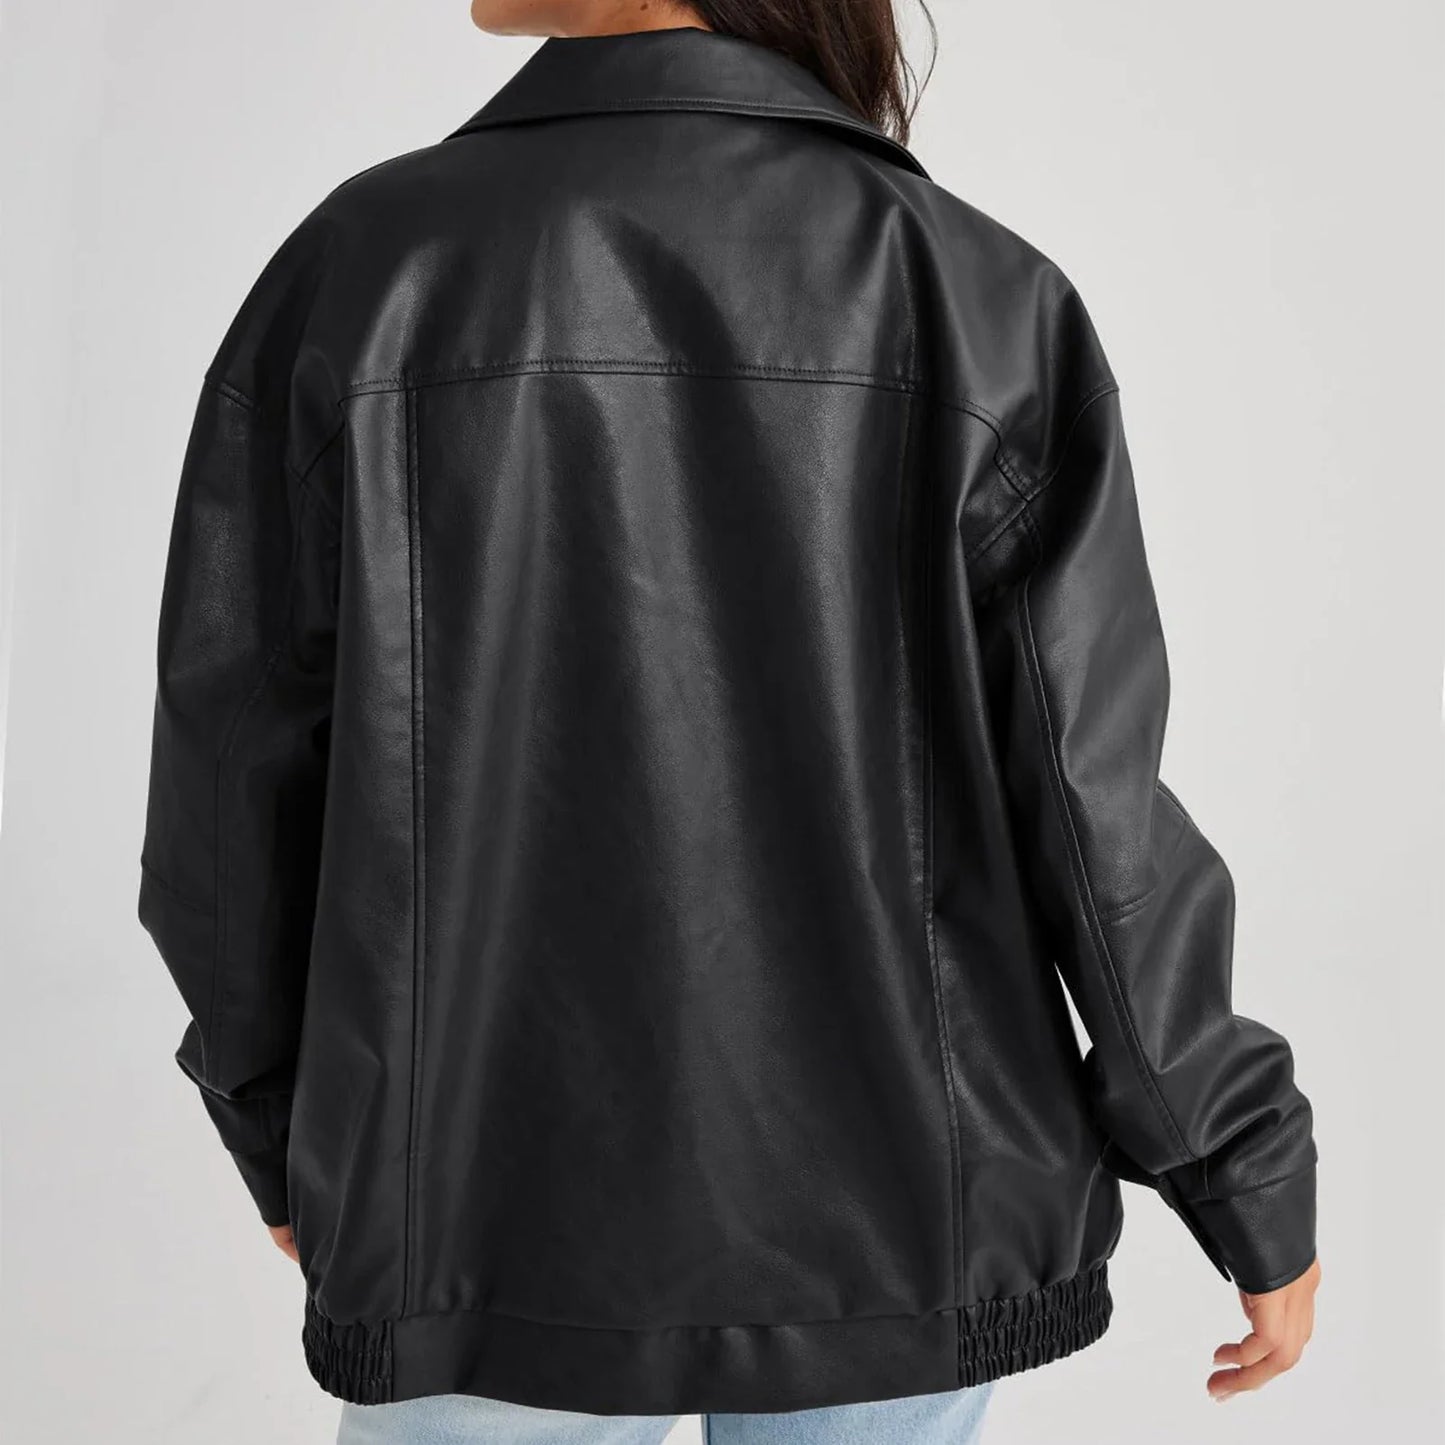 Women Leather Casual Motorcycle Fashion Long Sleeve Lapel Zipper Vintage Streetwear Cropped Jacket Coat